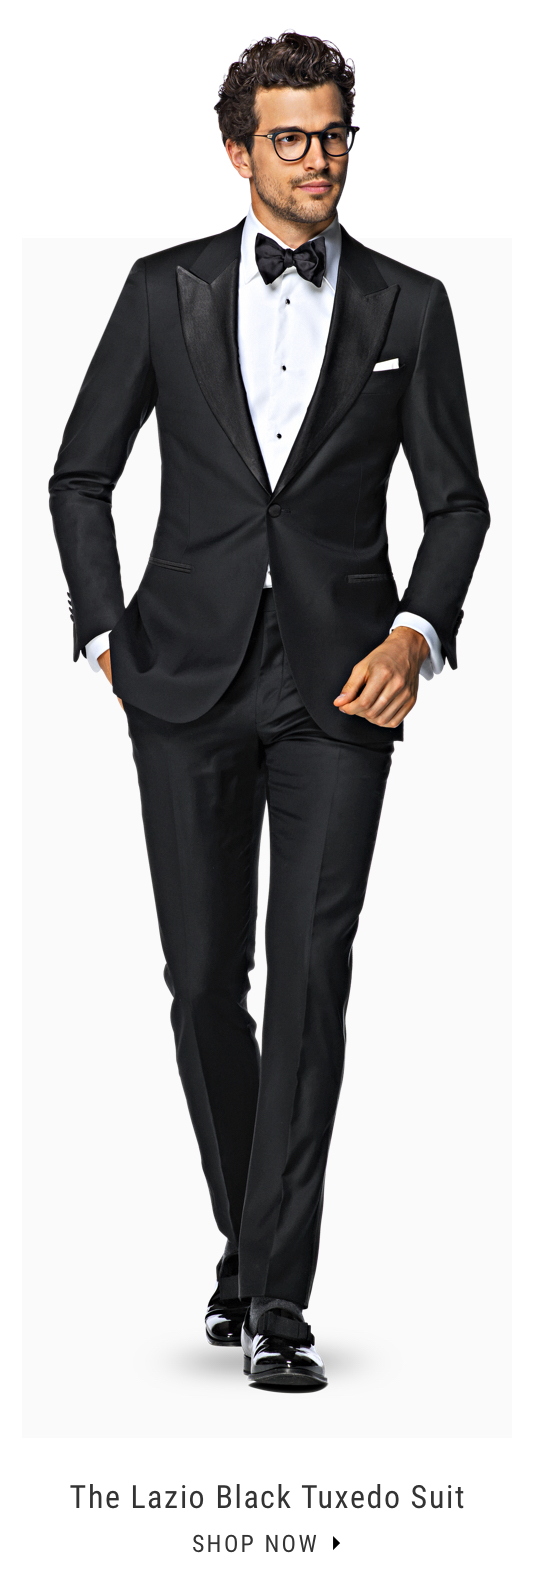 The Lazio Black Tuxedo Suit